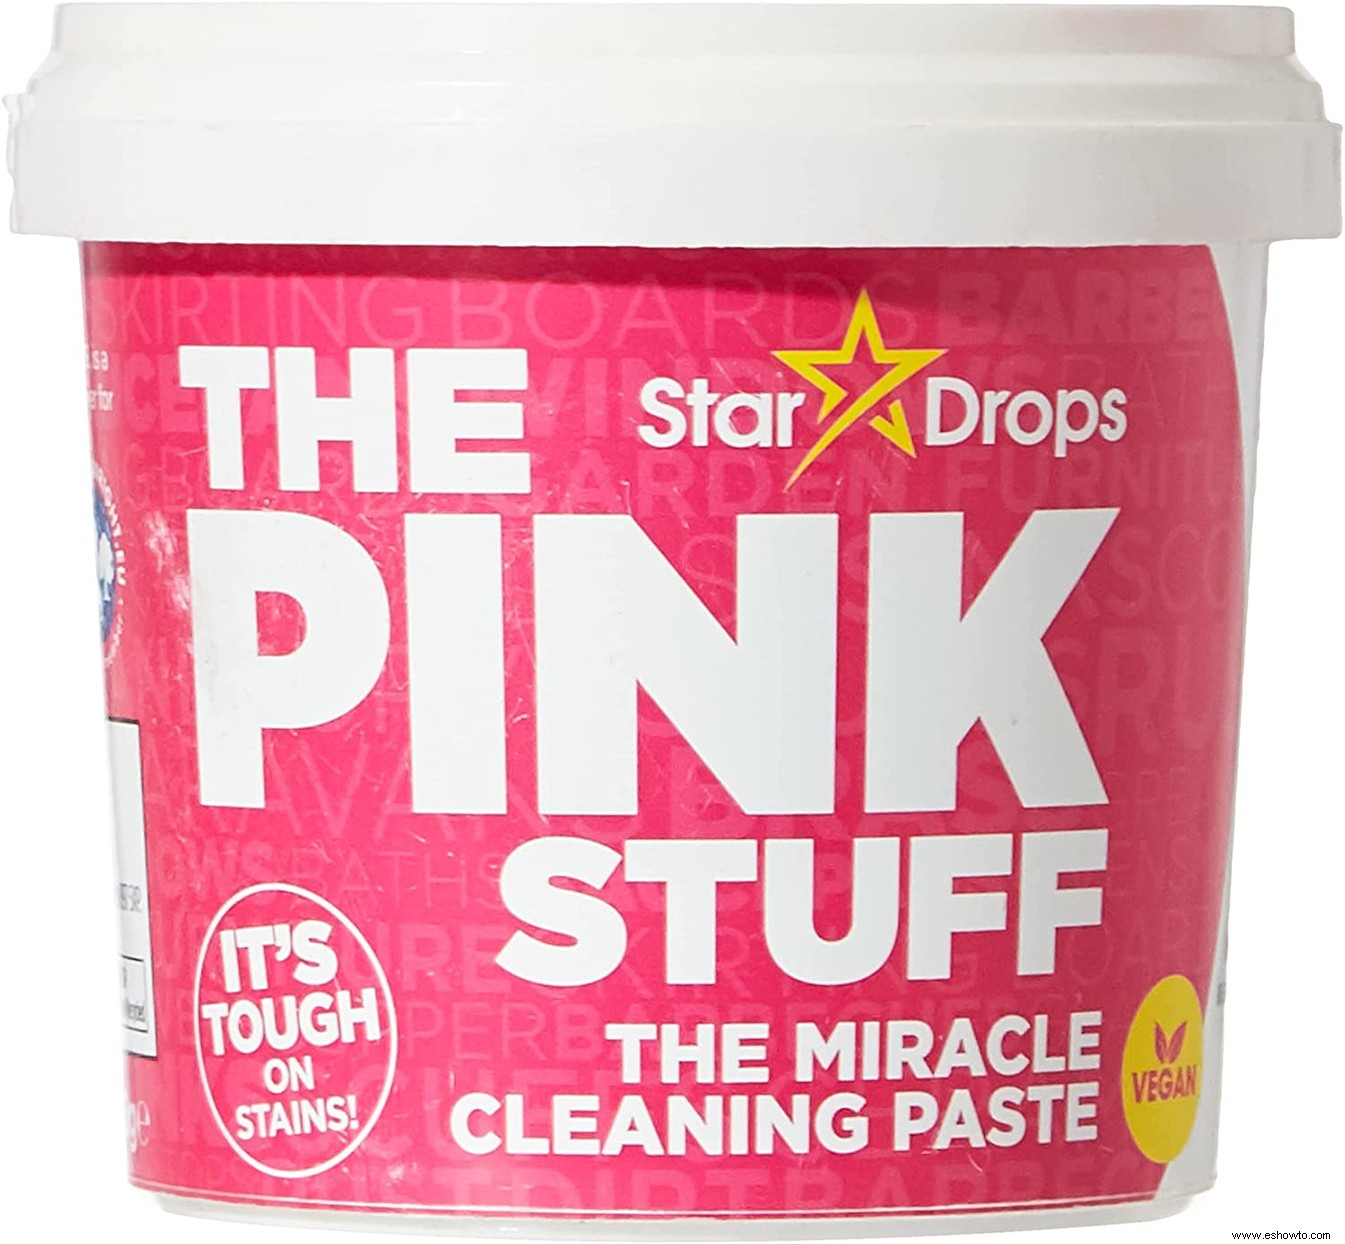 Probé el Pink Stuff Cleaner, famoso en Internet, para ver si realmente hace milagros 